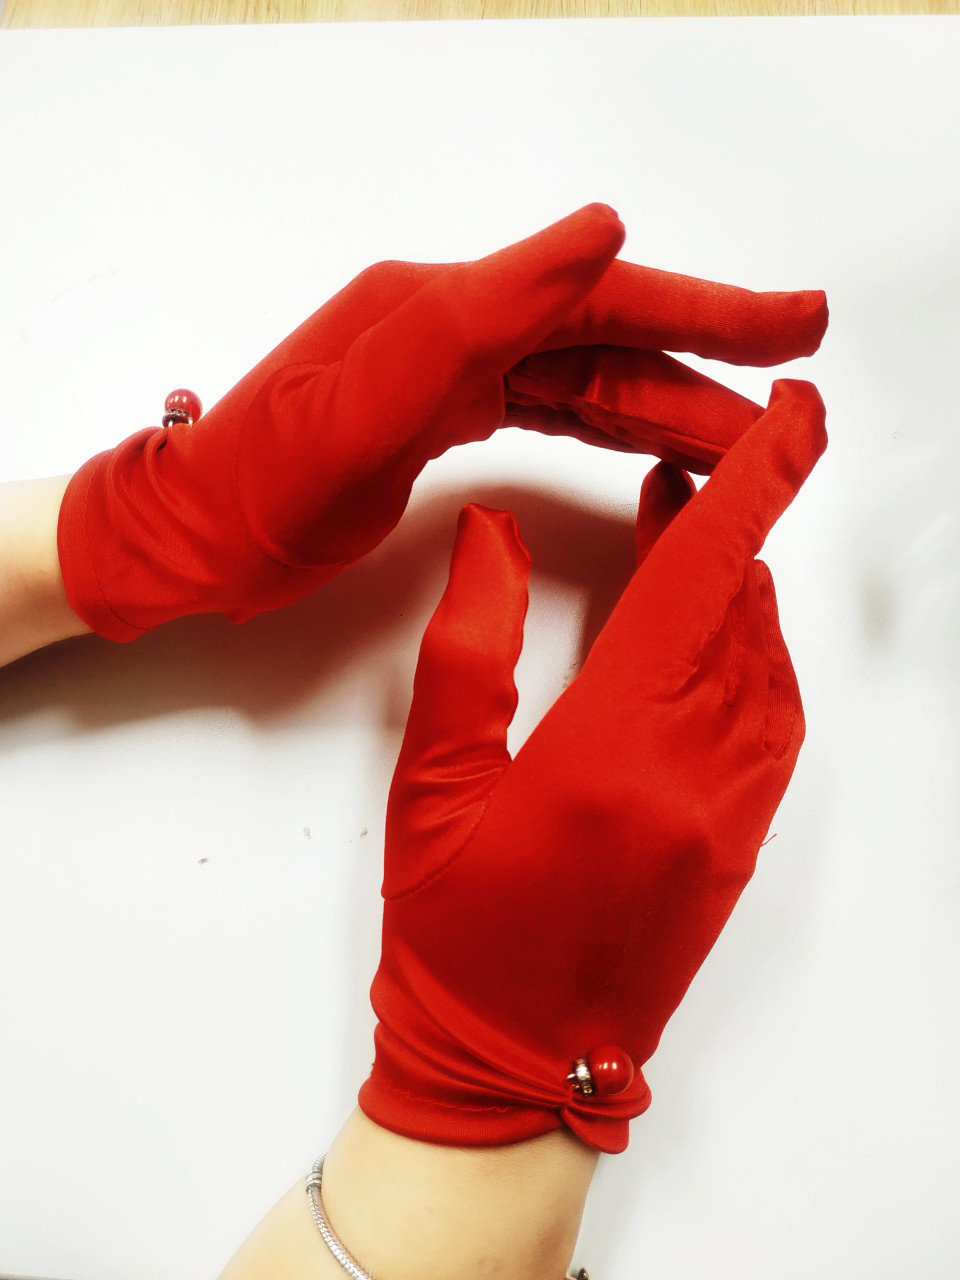 Găng tay lụa bóng sang trọng màu đỏ cho Cô dâu và Dạ hội, đi tiệc, sự kiện, lễ hội, chụp ảnh MS: 43546